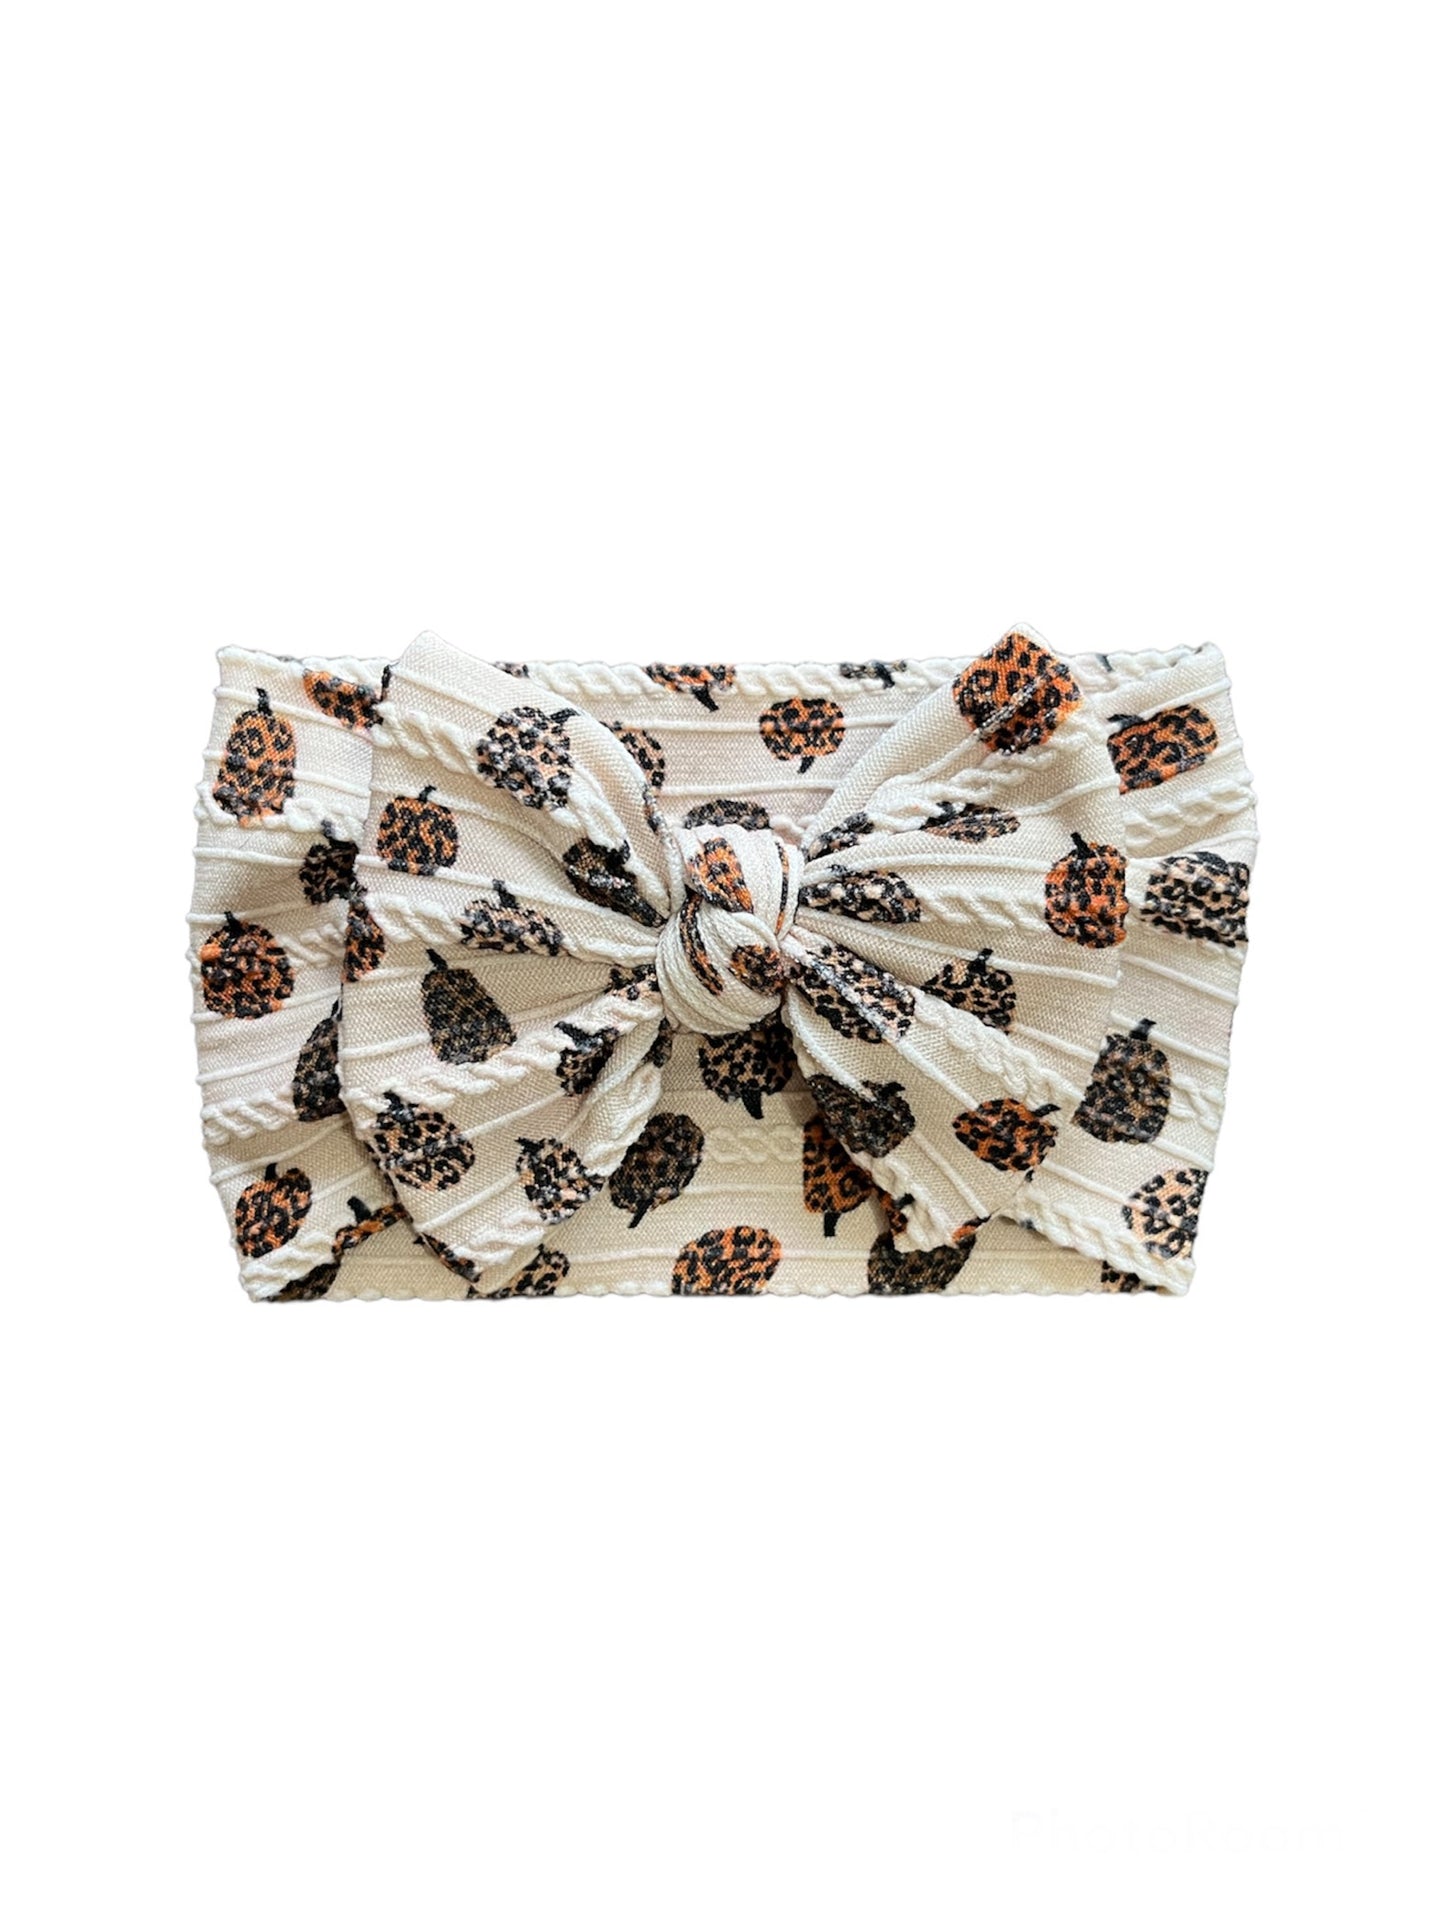 Cable Knit Headbands - Leopard Pumpkins!